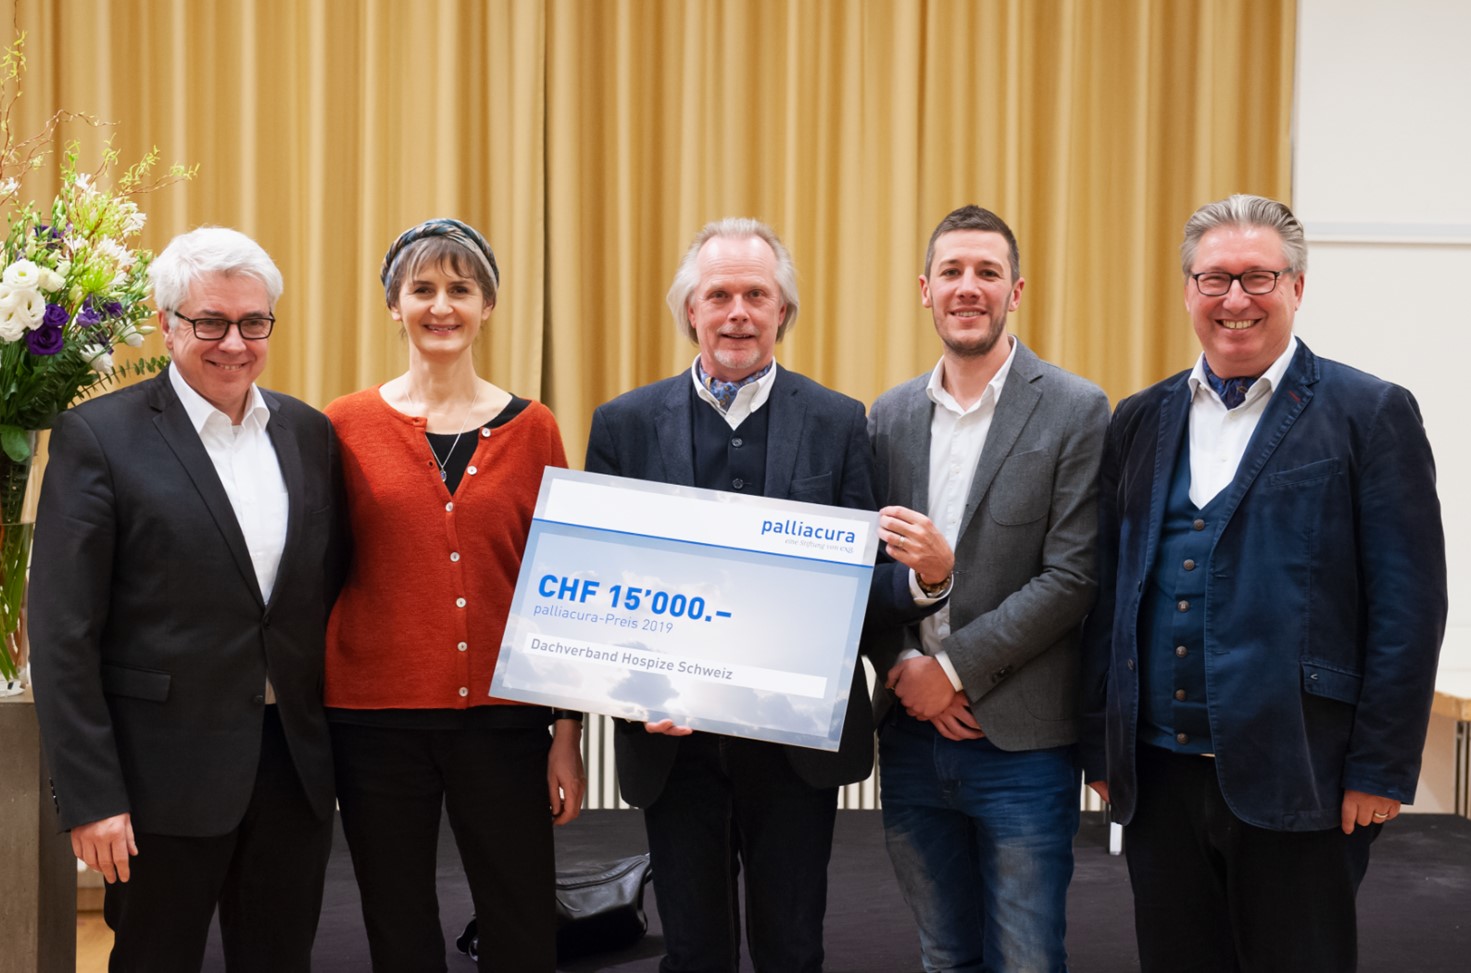 Bildlegende von links nach rechts: Vorstand des Dachverbandes Hospize Schweiz: Henri Gassler, Sibylle Jean-Petit-Matile, Horst Ubrich, Roland Buschor, Hans Peter Stutz